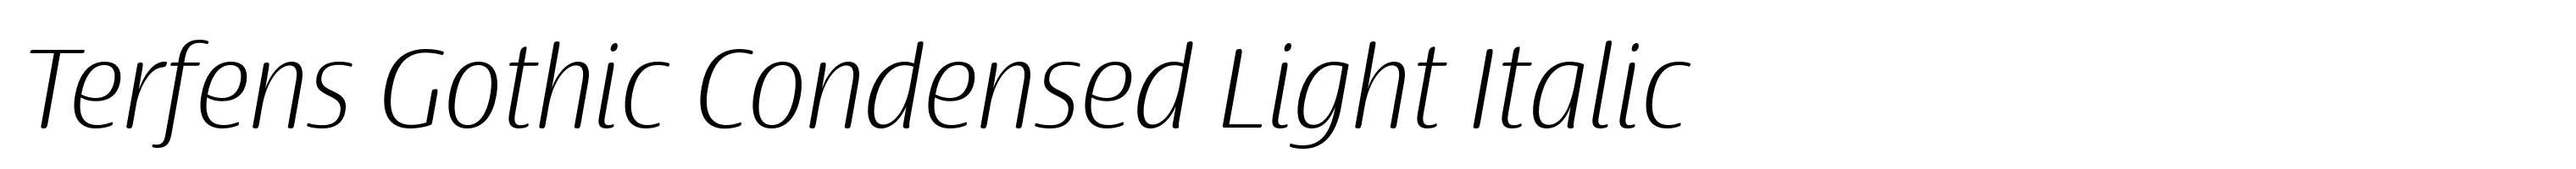 Terfens Gothic Condensed Light Italic